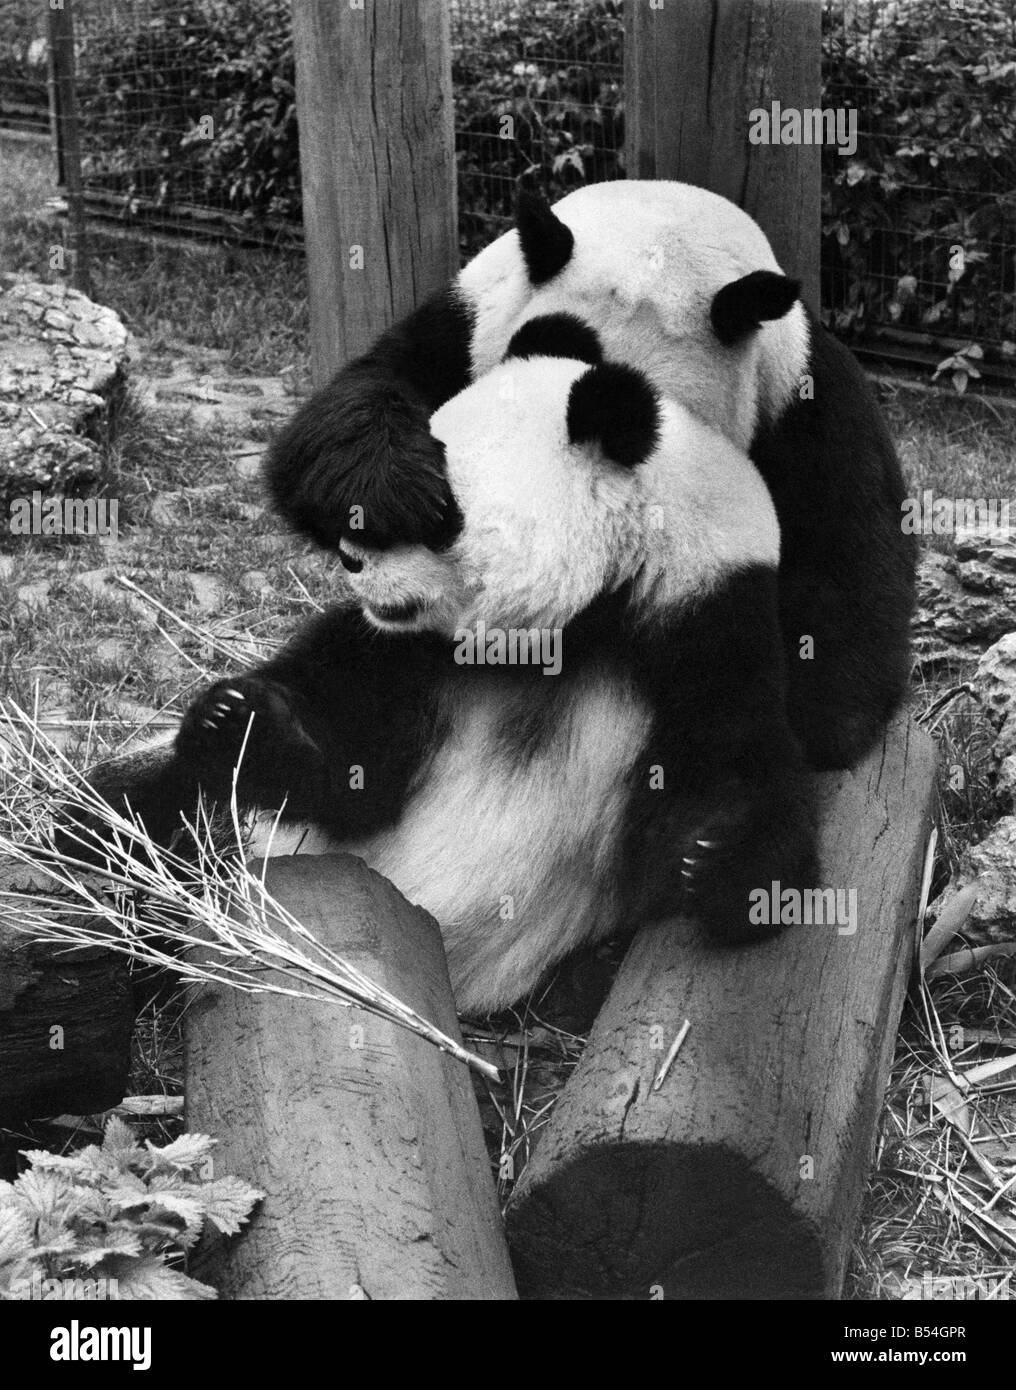 Tiere: Panda. Es gibt eine Hoffnung, die endlich die zwei großen Pandas im Zoo von London in einer viel wärmer Freundschaft hinzukommen Stockfoto